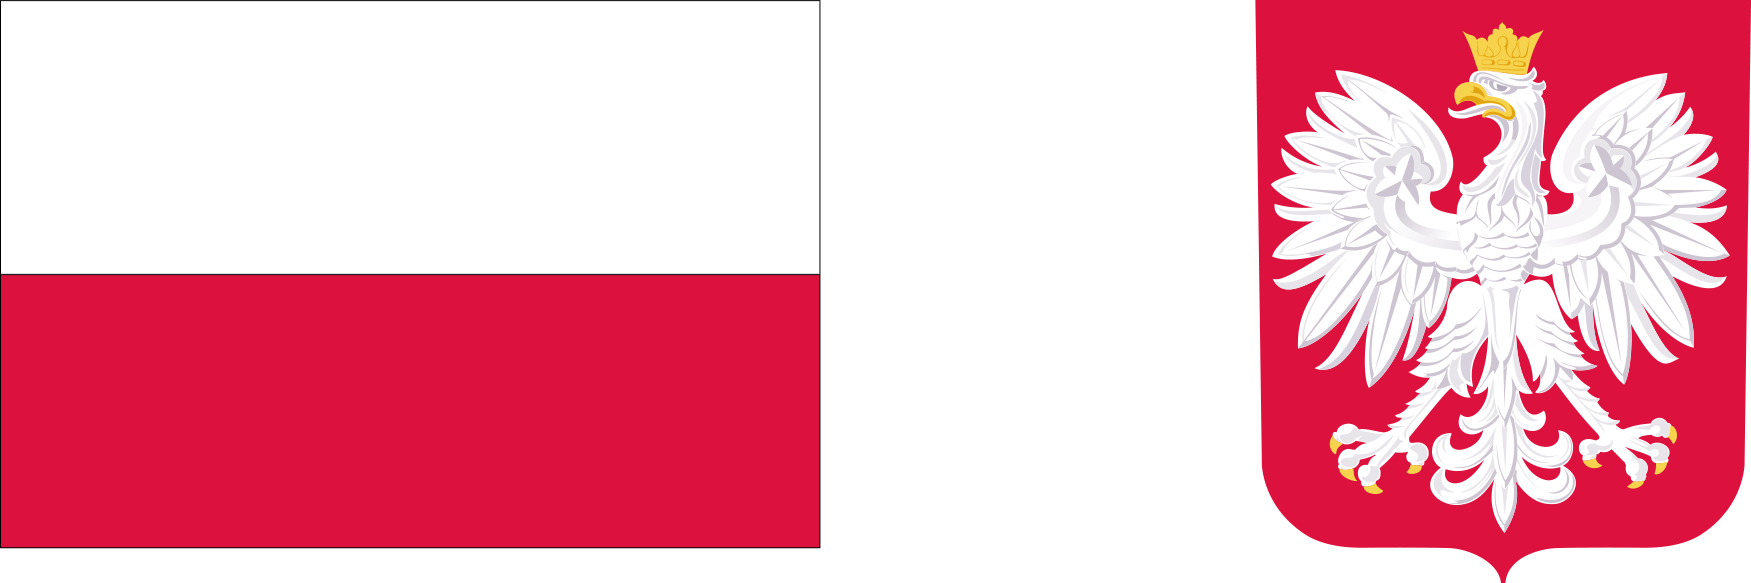 Flaga Rzeczypospolitej Polskiej i wizerunek godła Rzeczypospolitej Polskiej